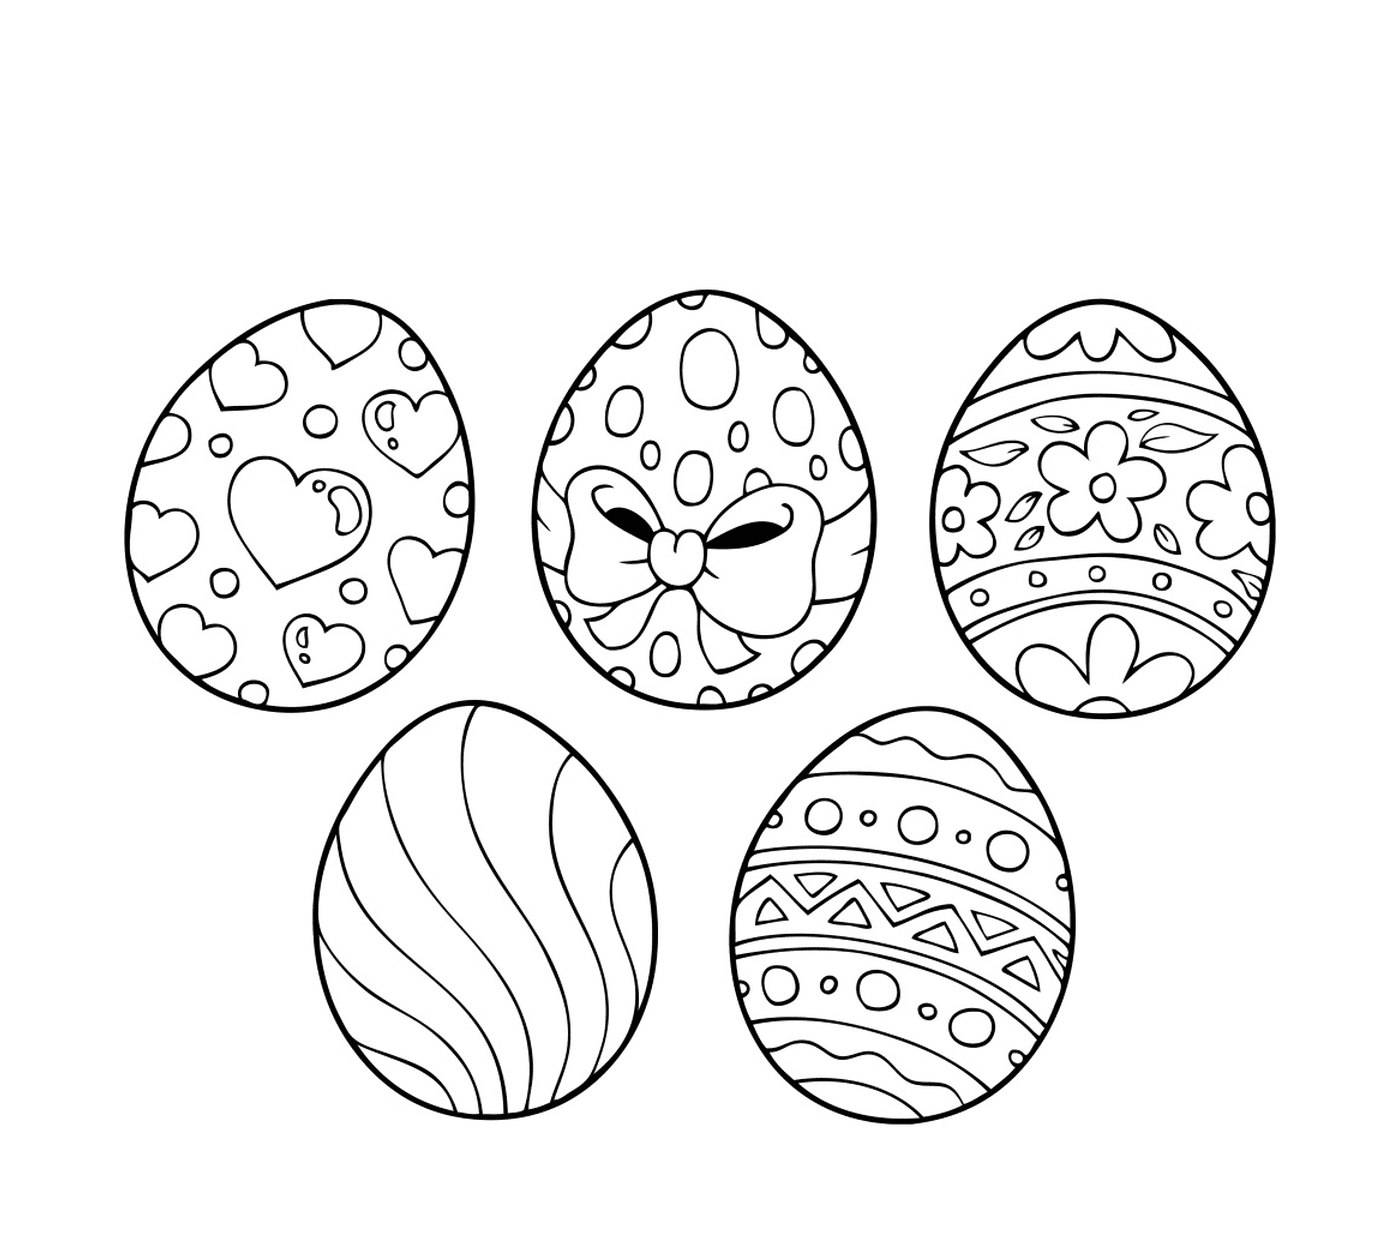  Ovos de Páscoa 2017, um conjunto de ovos de Páscoa decorados com diferentes padrões 